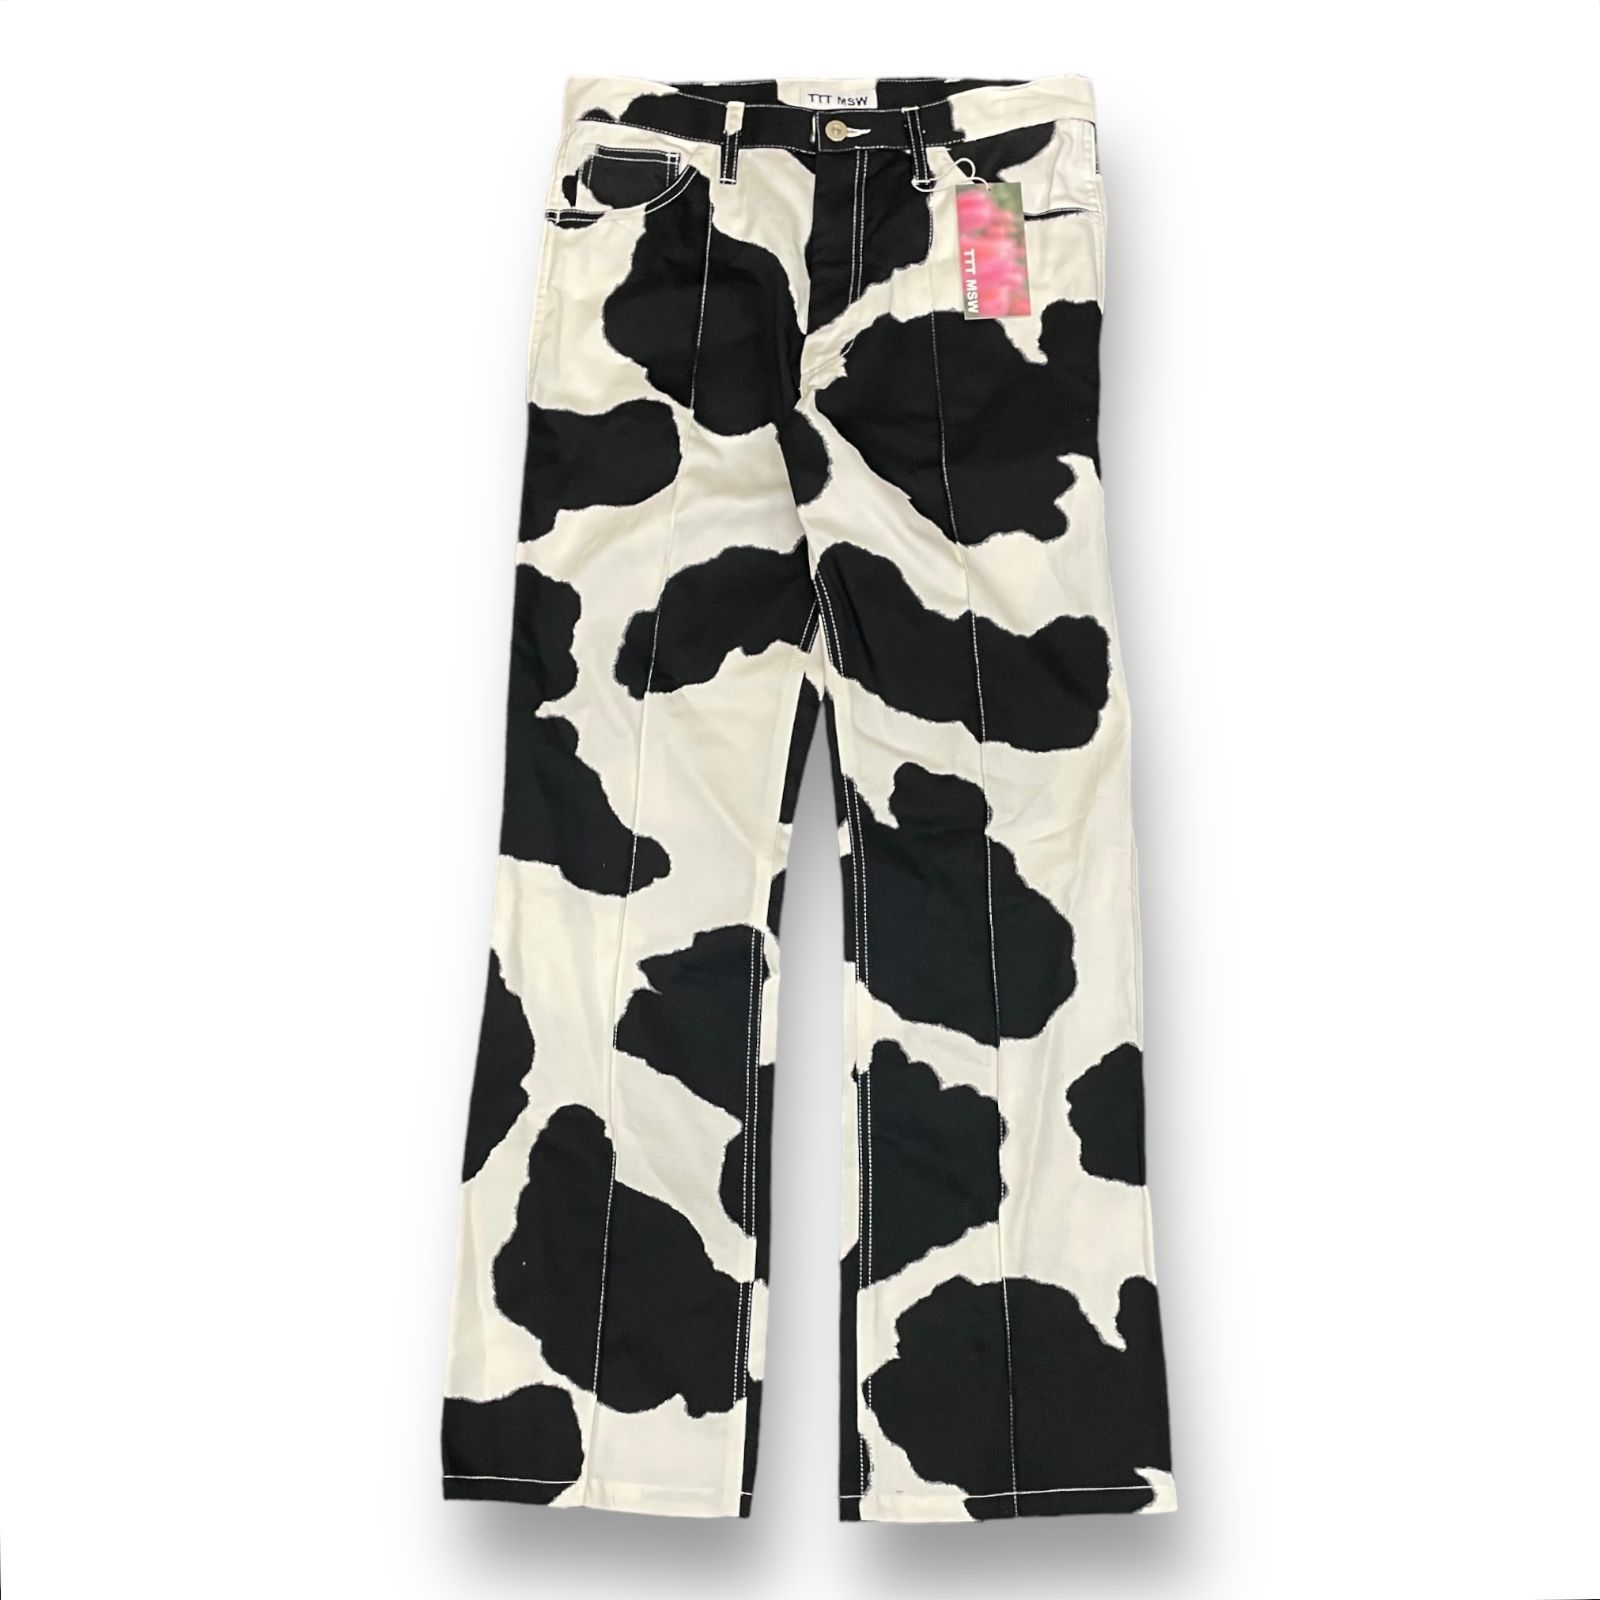 TTT MSW 21aw Holstein Work Pants パンツ - ワークパンツ/カーゴパンツ